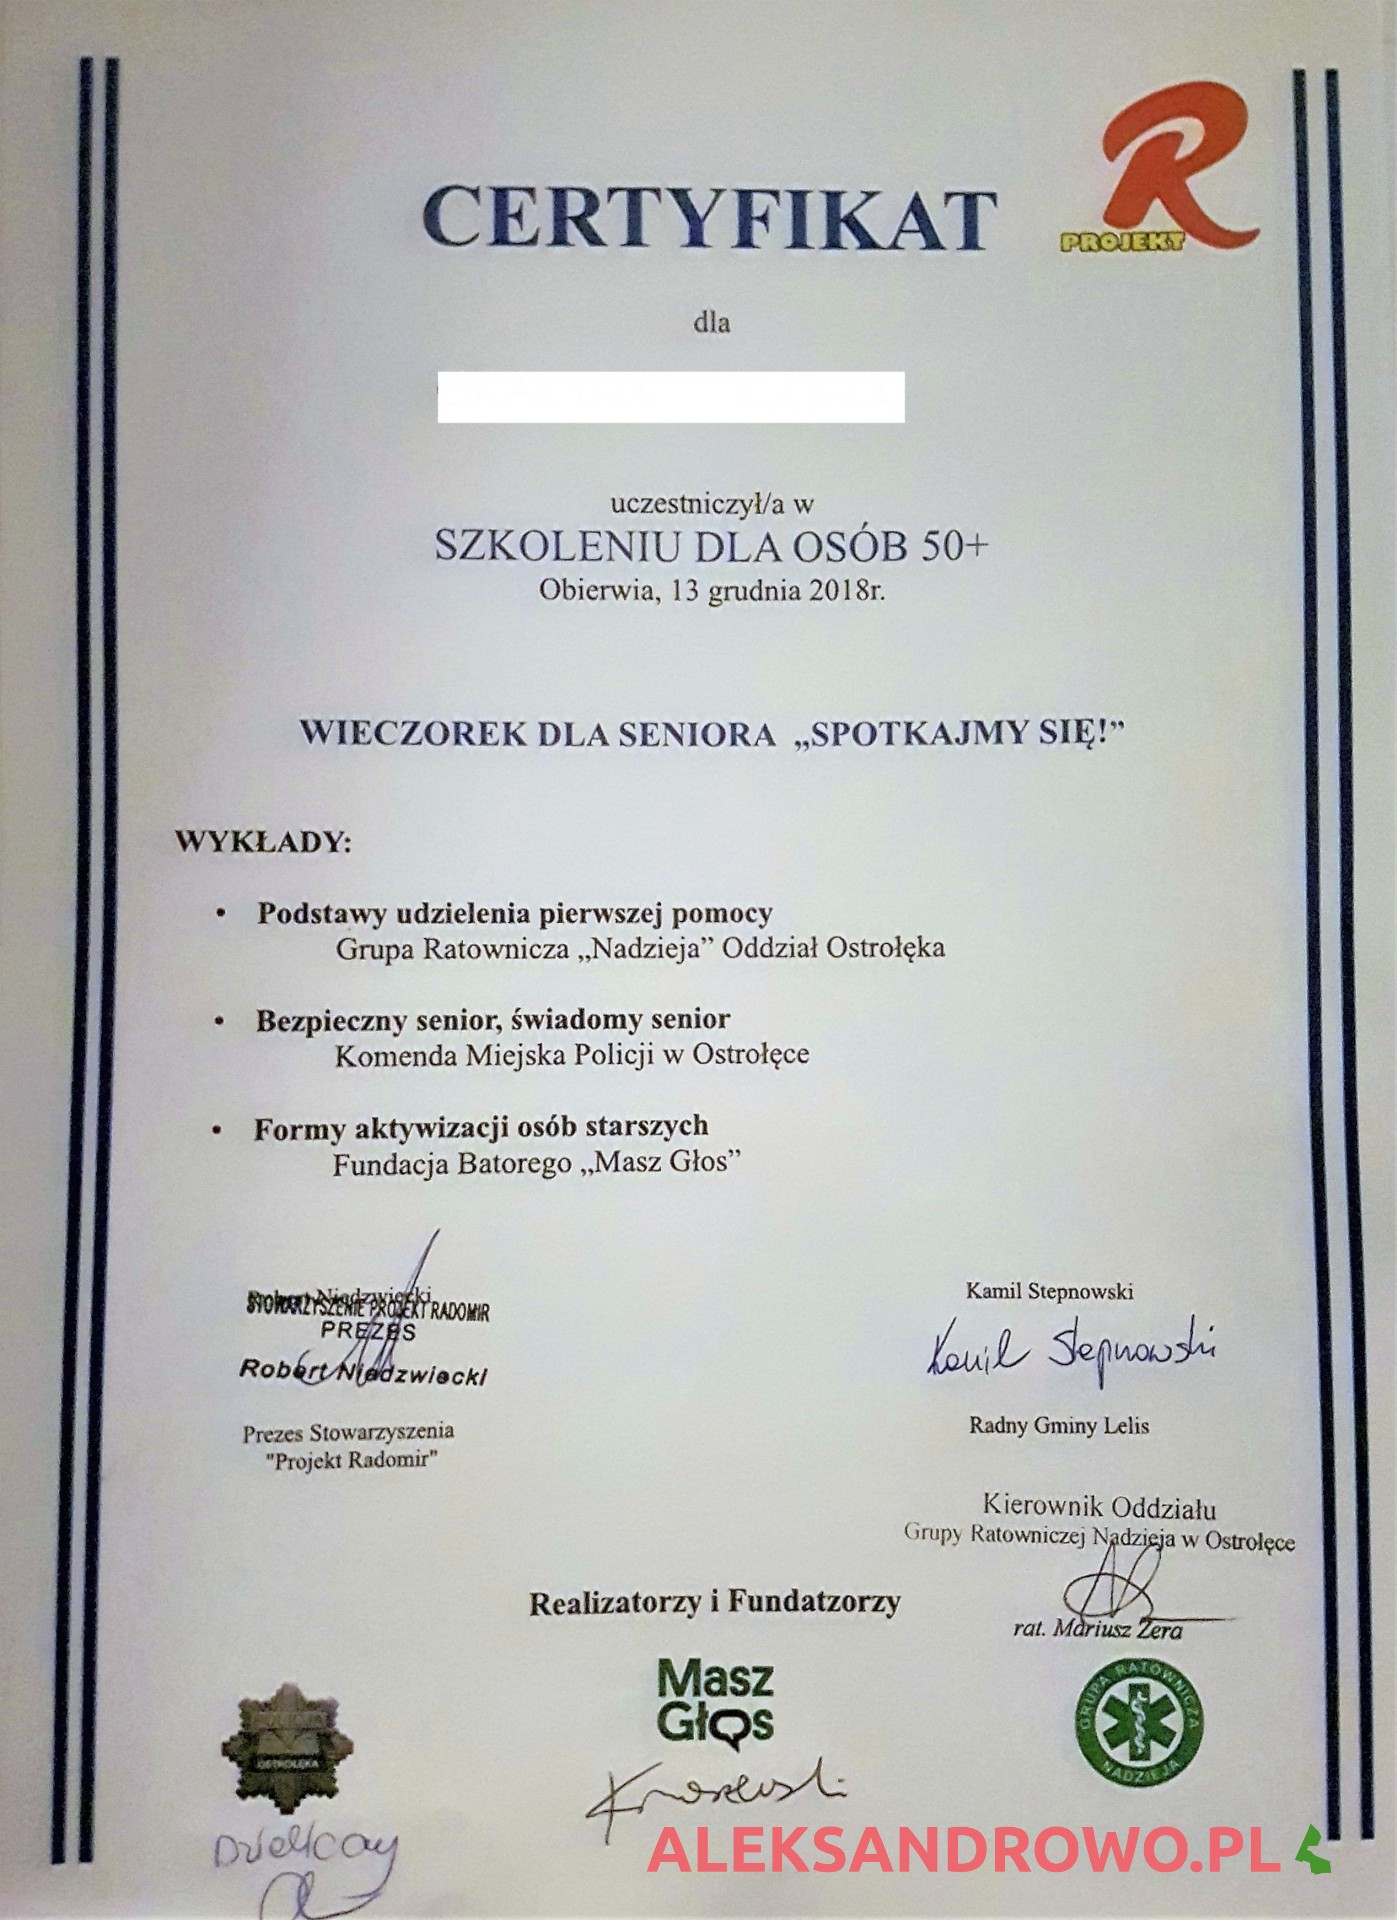 Certyfikat uczestnictwa w szkoleniu